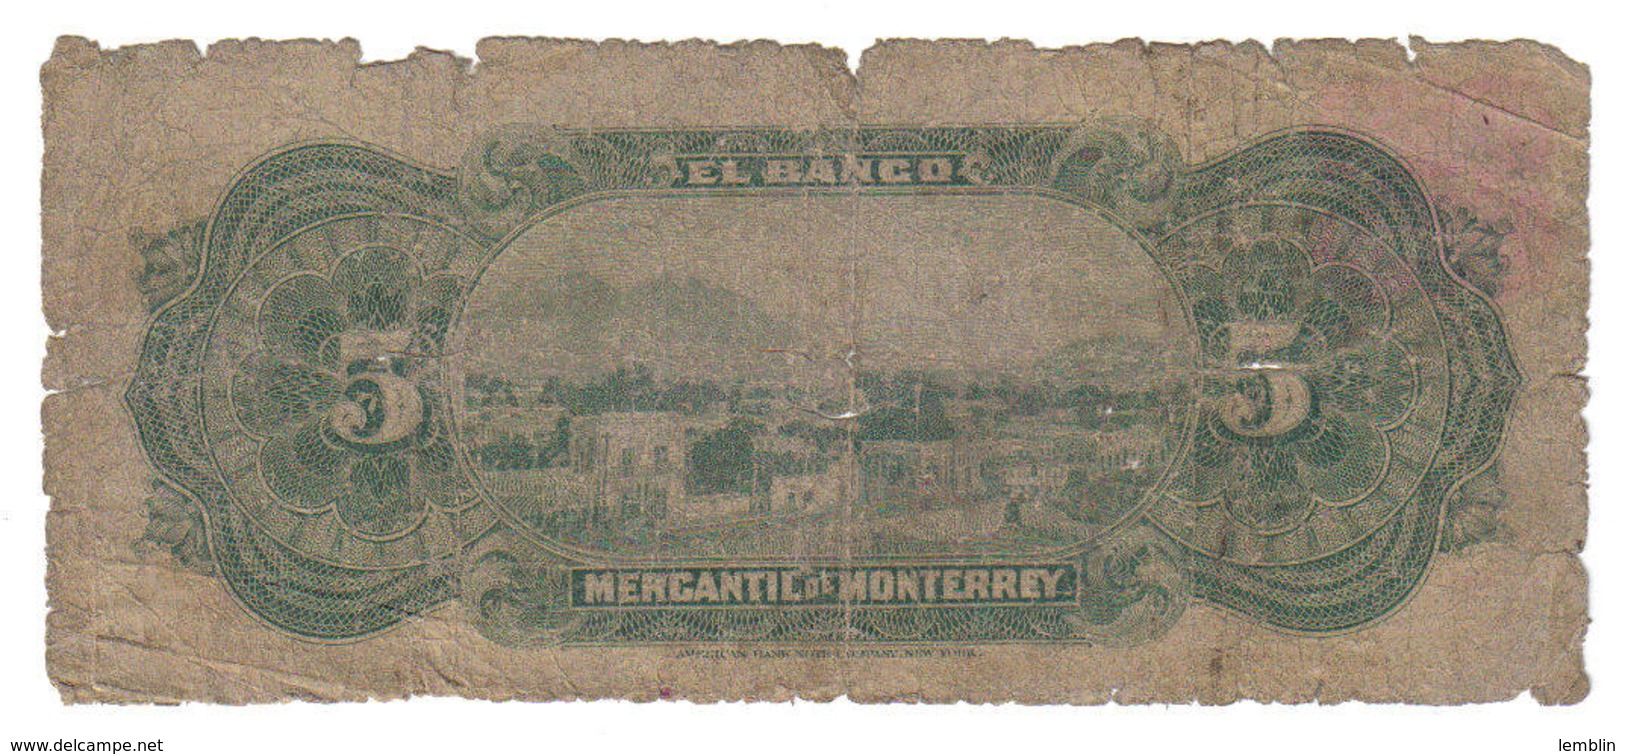 5 PESOS BANCO MERCANTIL DE MONTERREY 1906 - Mexique